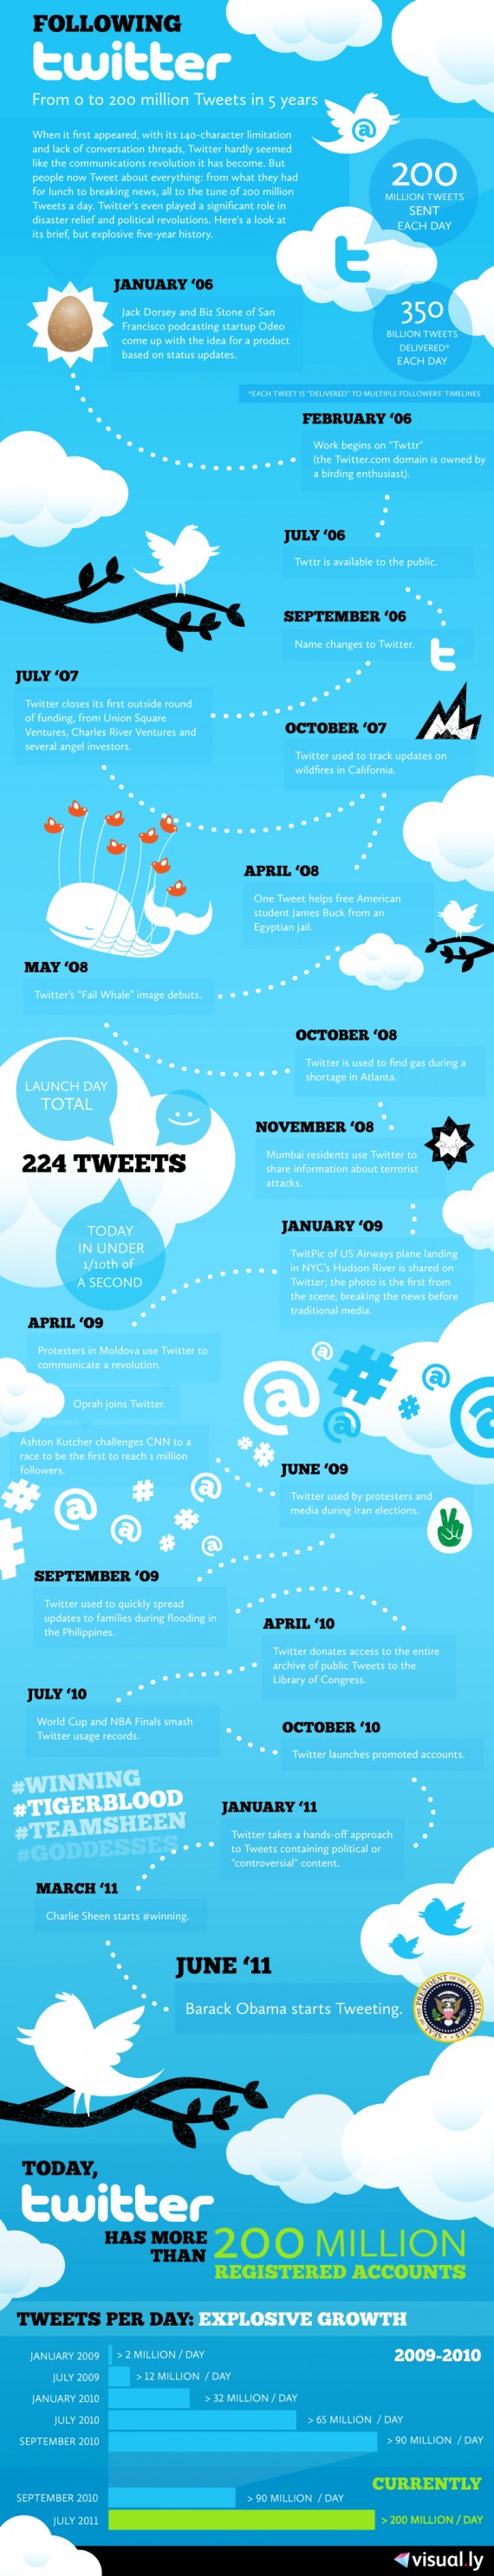 Infographie : Célébration des 5 ans de Twitter, passant de 0 à 200 millions de tweets quotidiennement